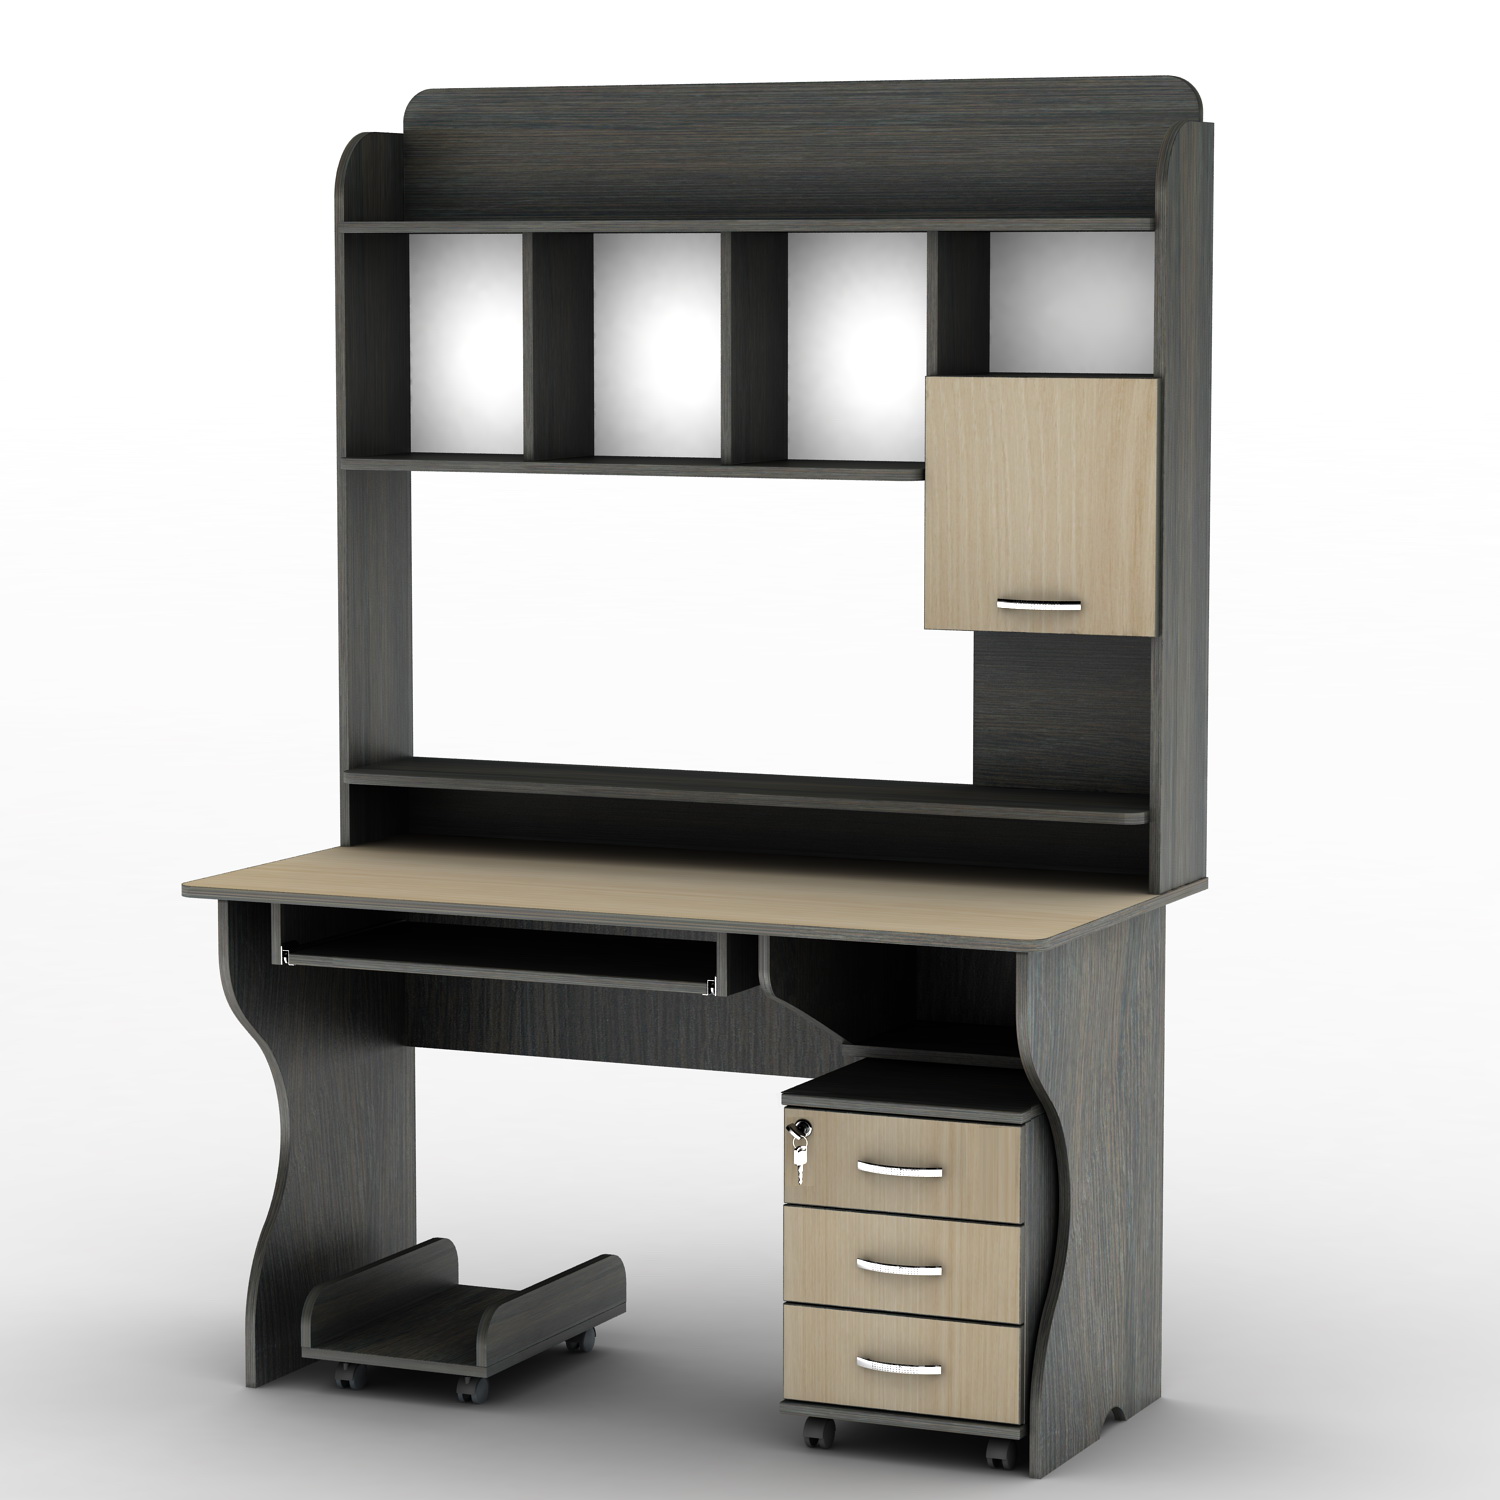 Компьютерный стол с надстройкой для принтера